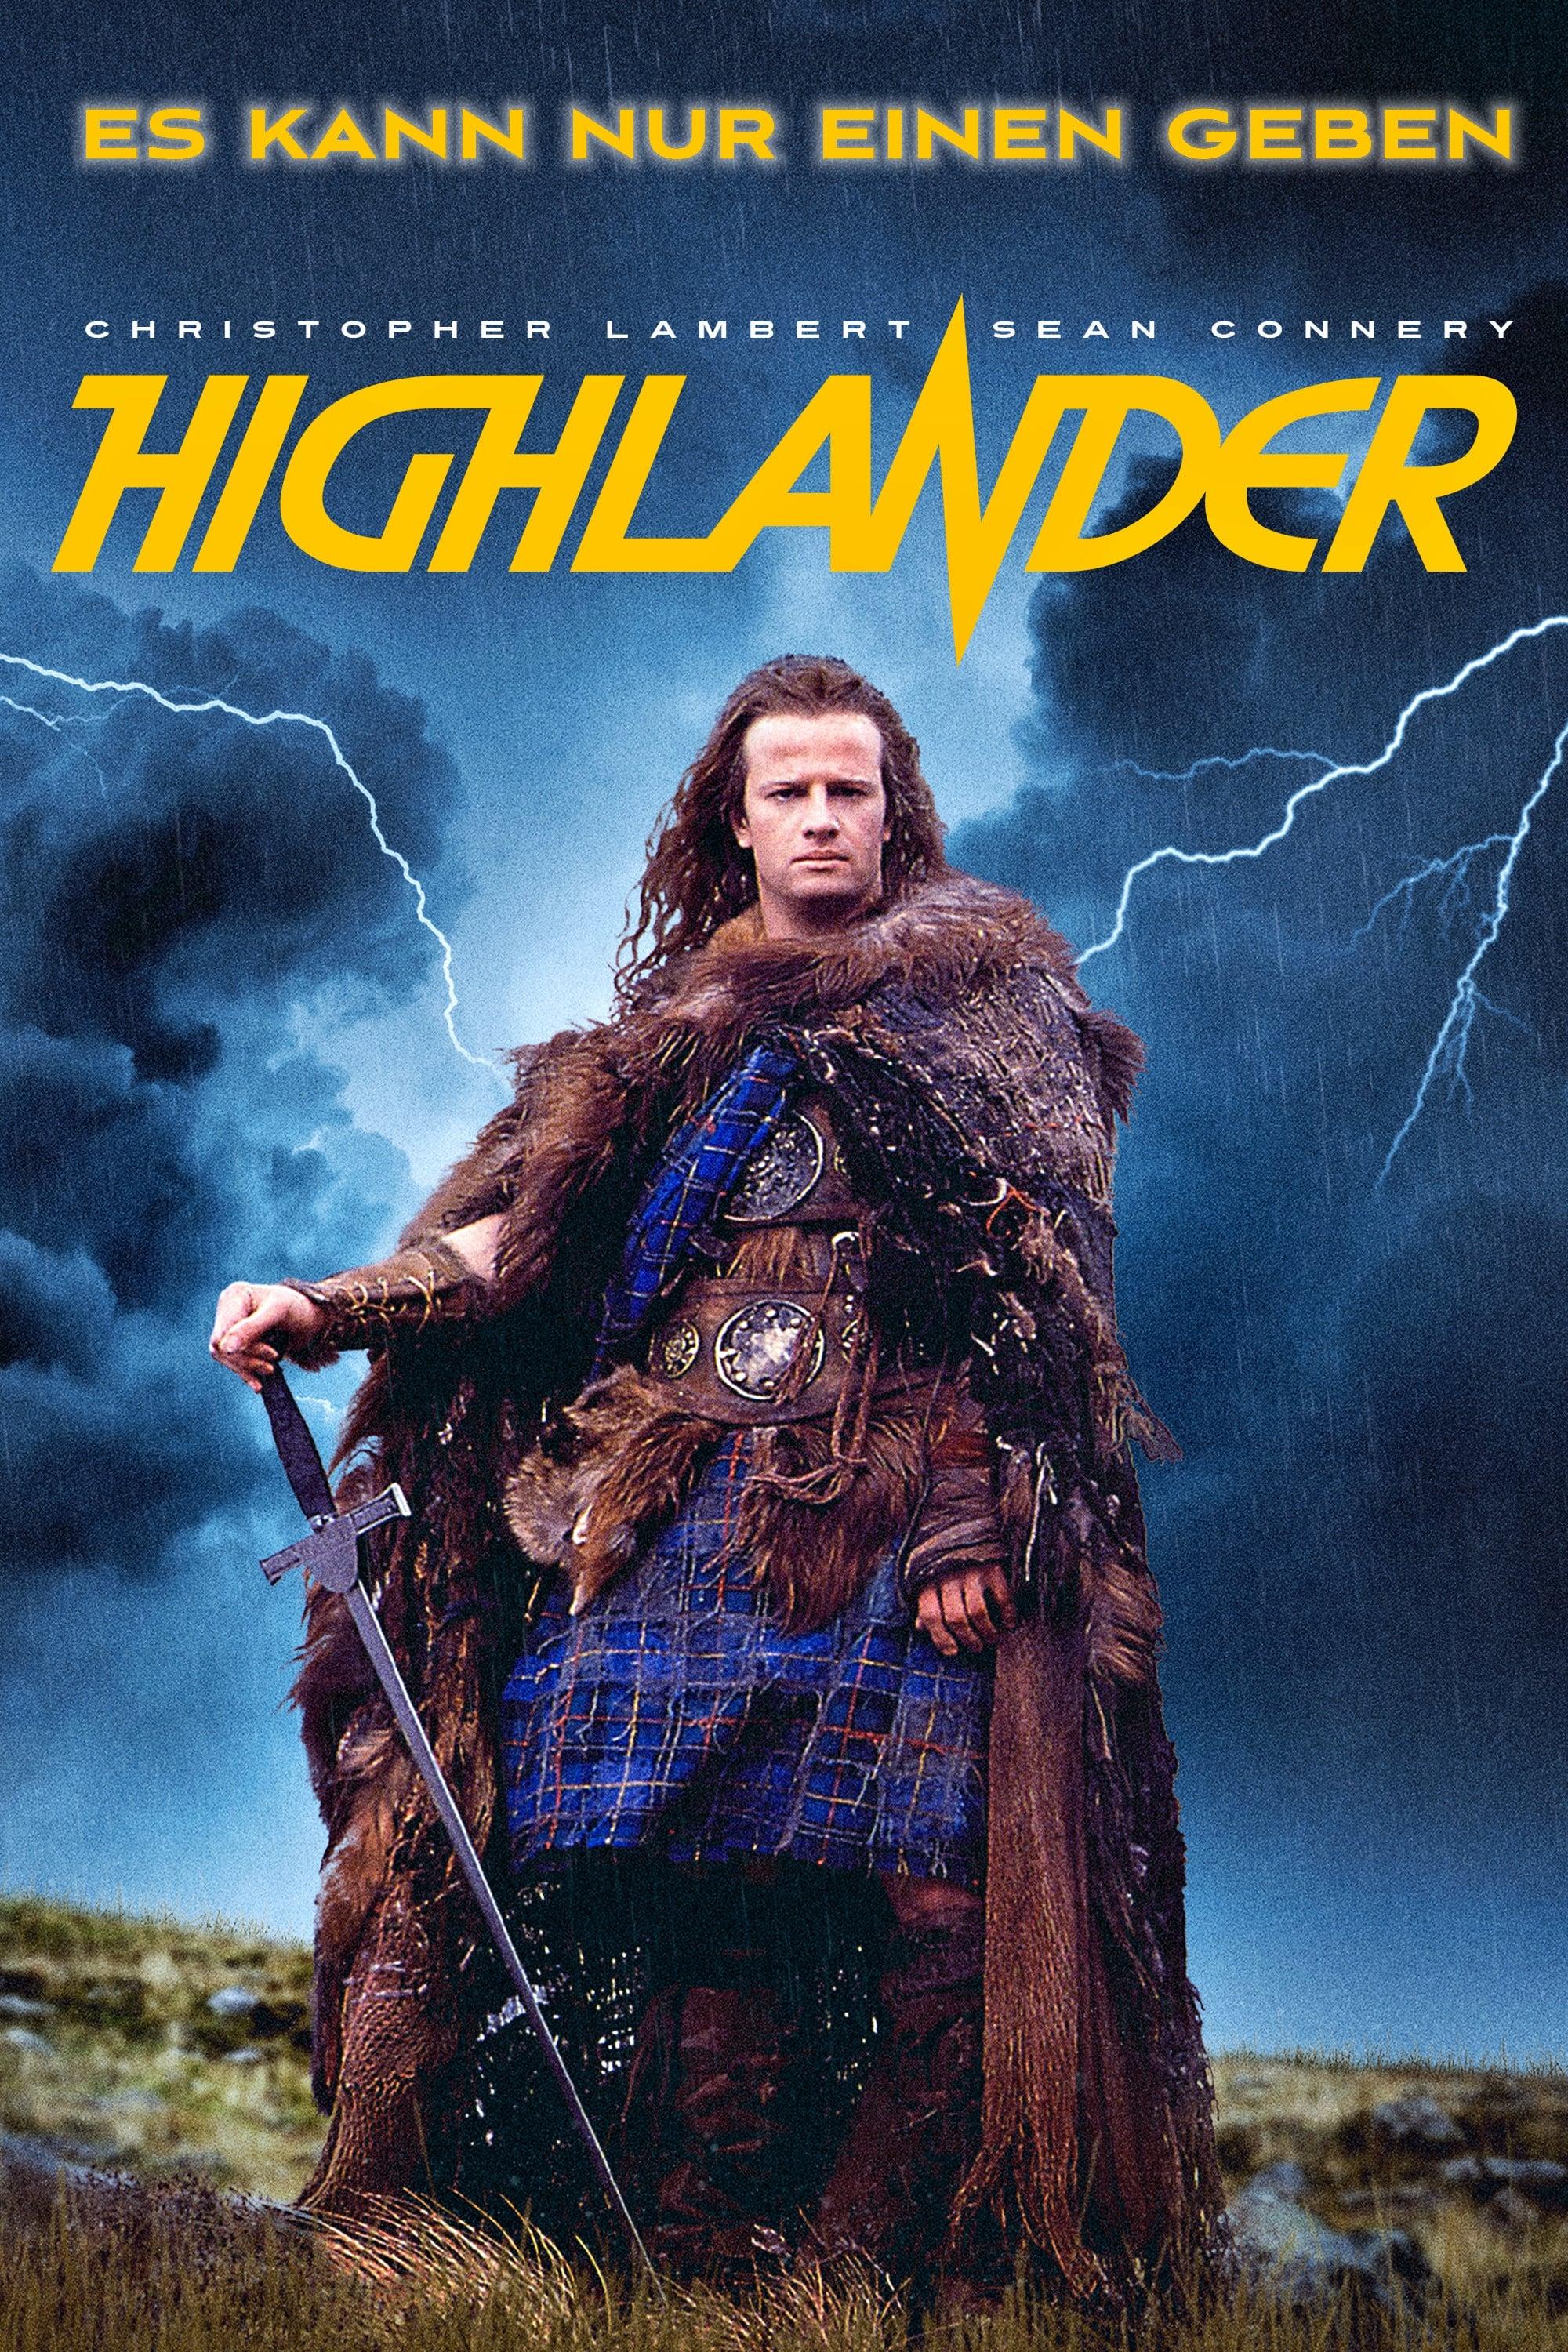 Highlander poster